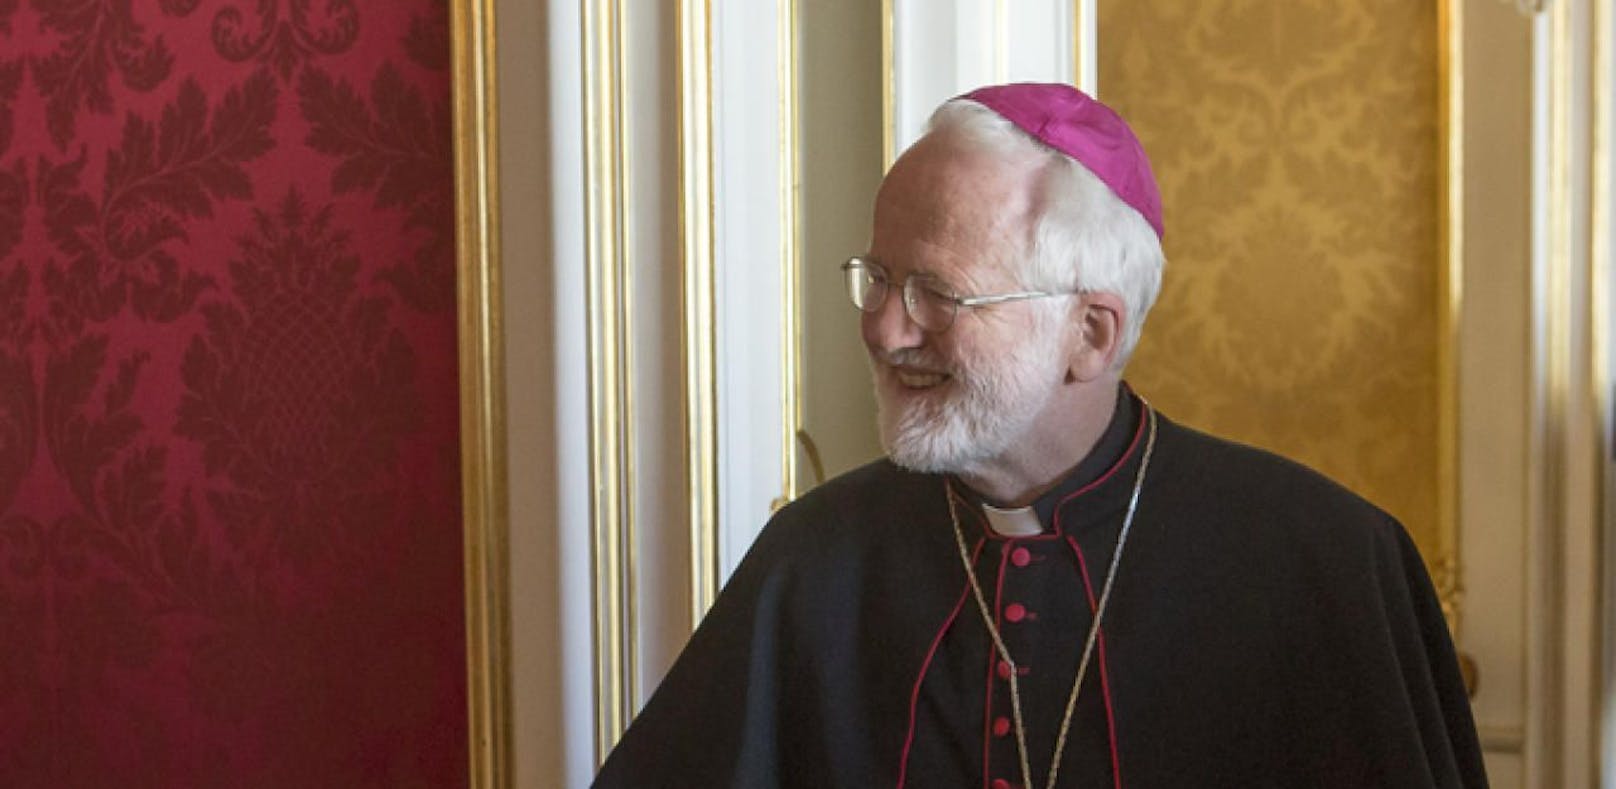 Bischof hält Homosexuelle für "Gestörte"